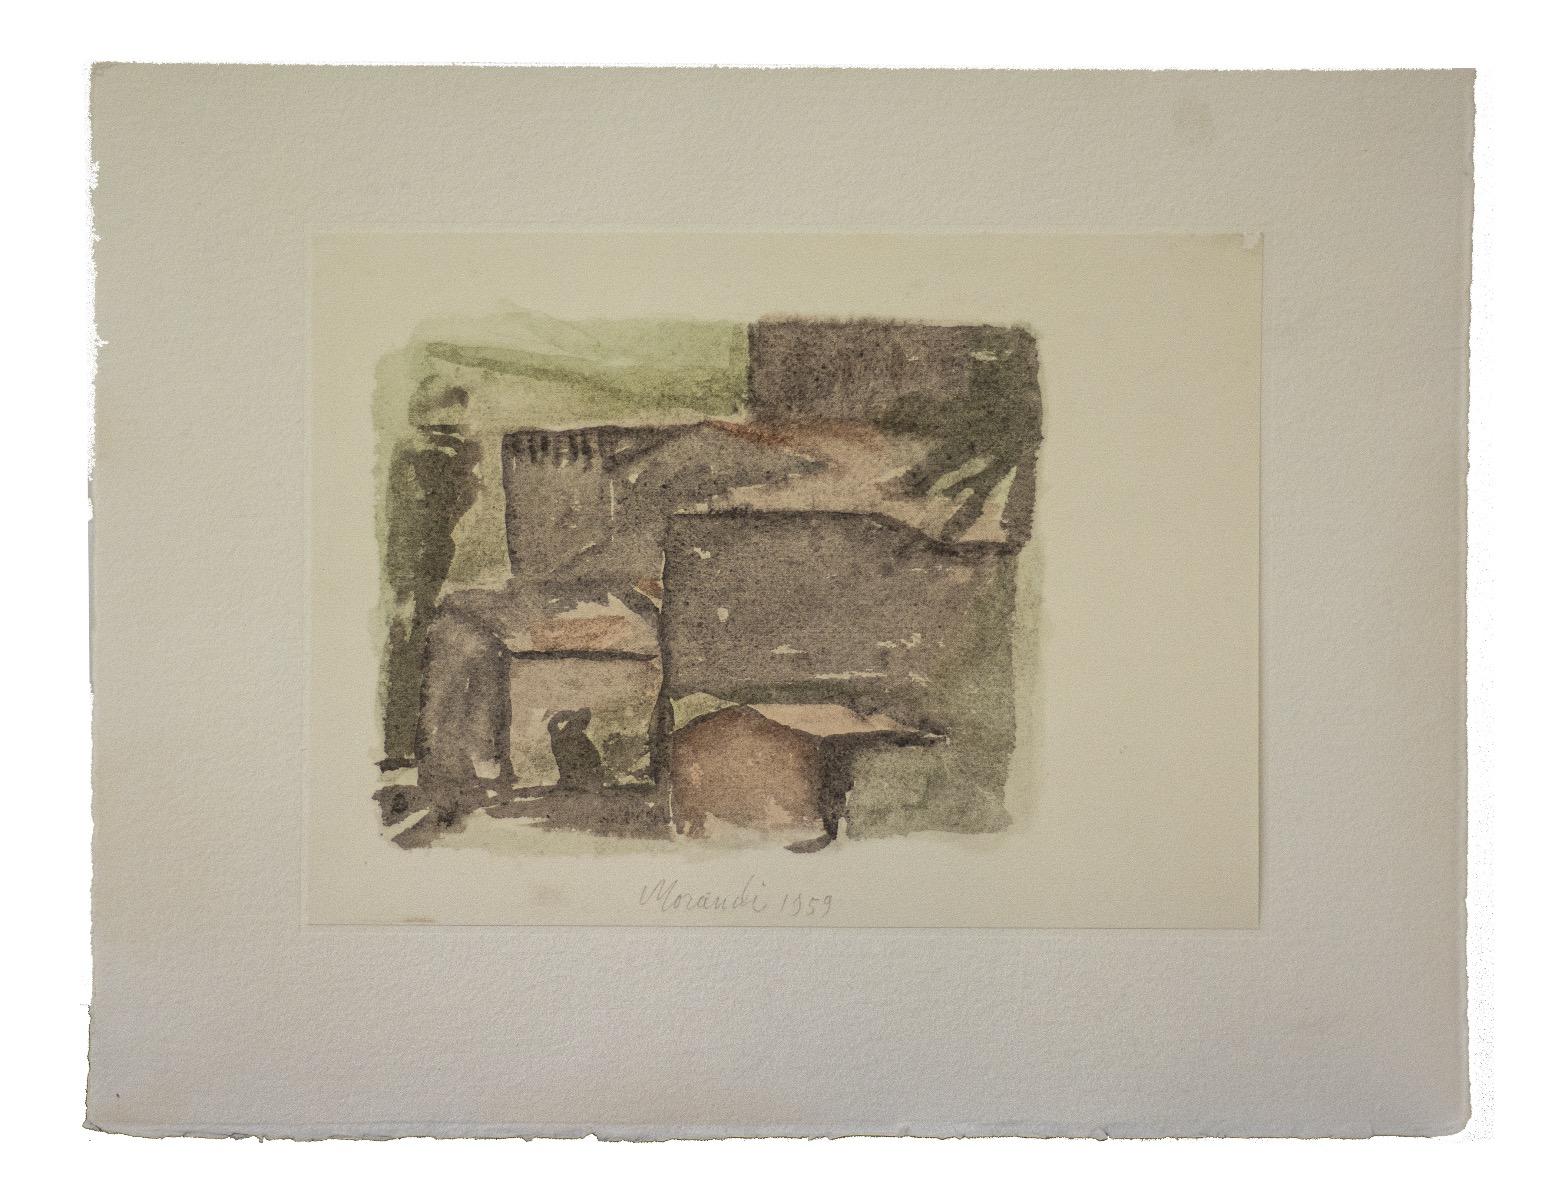 Rural Landscape - Vintage Offset Print after Giorgio Morandi - 1973